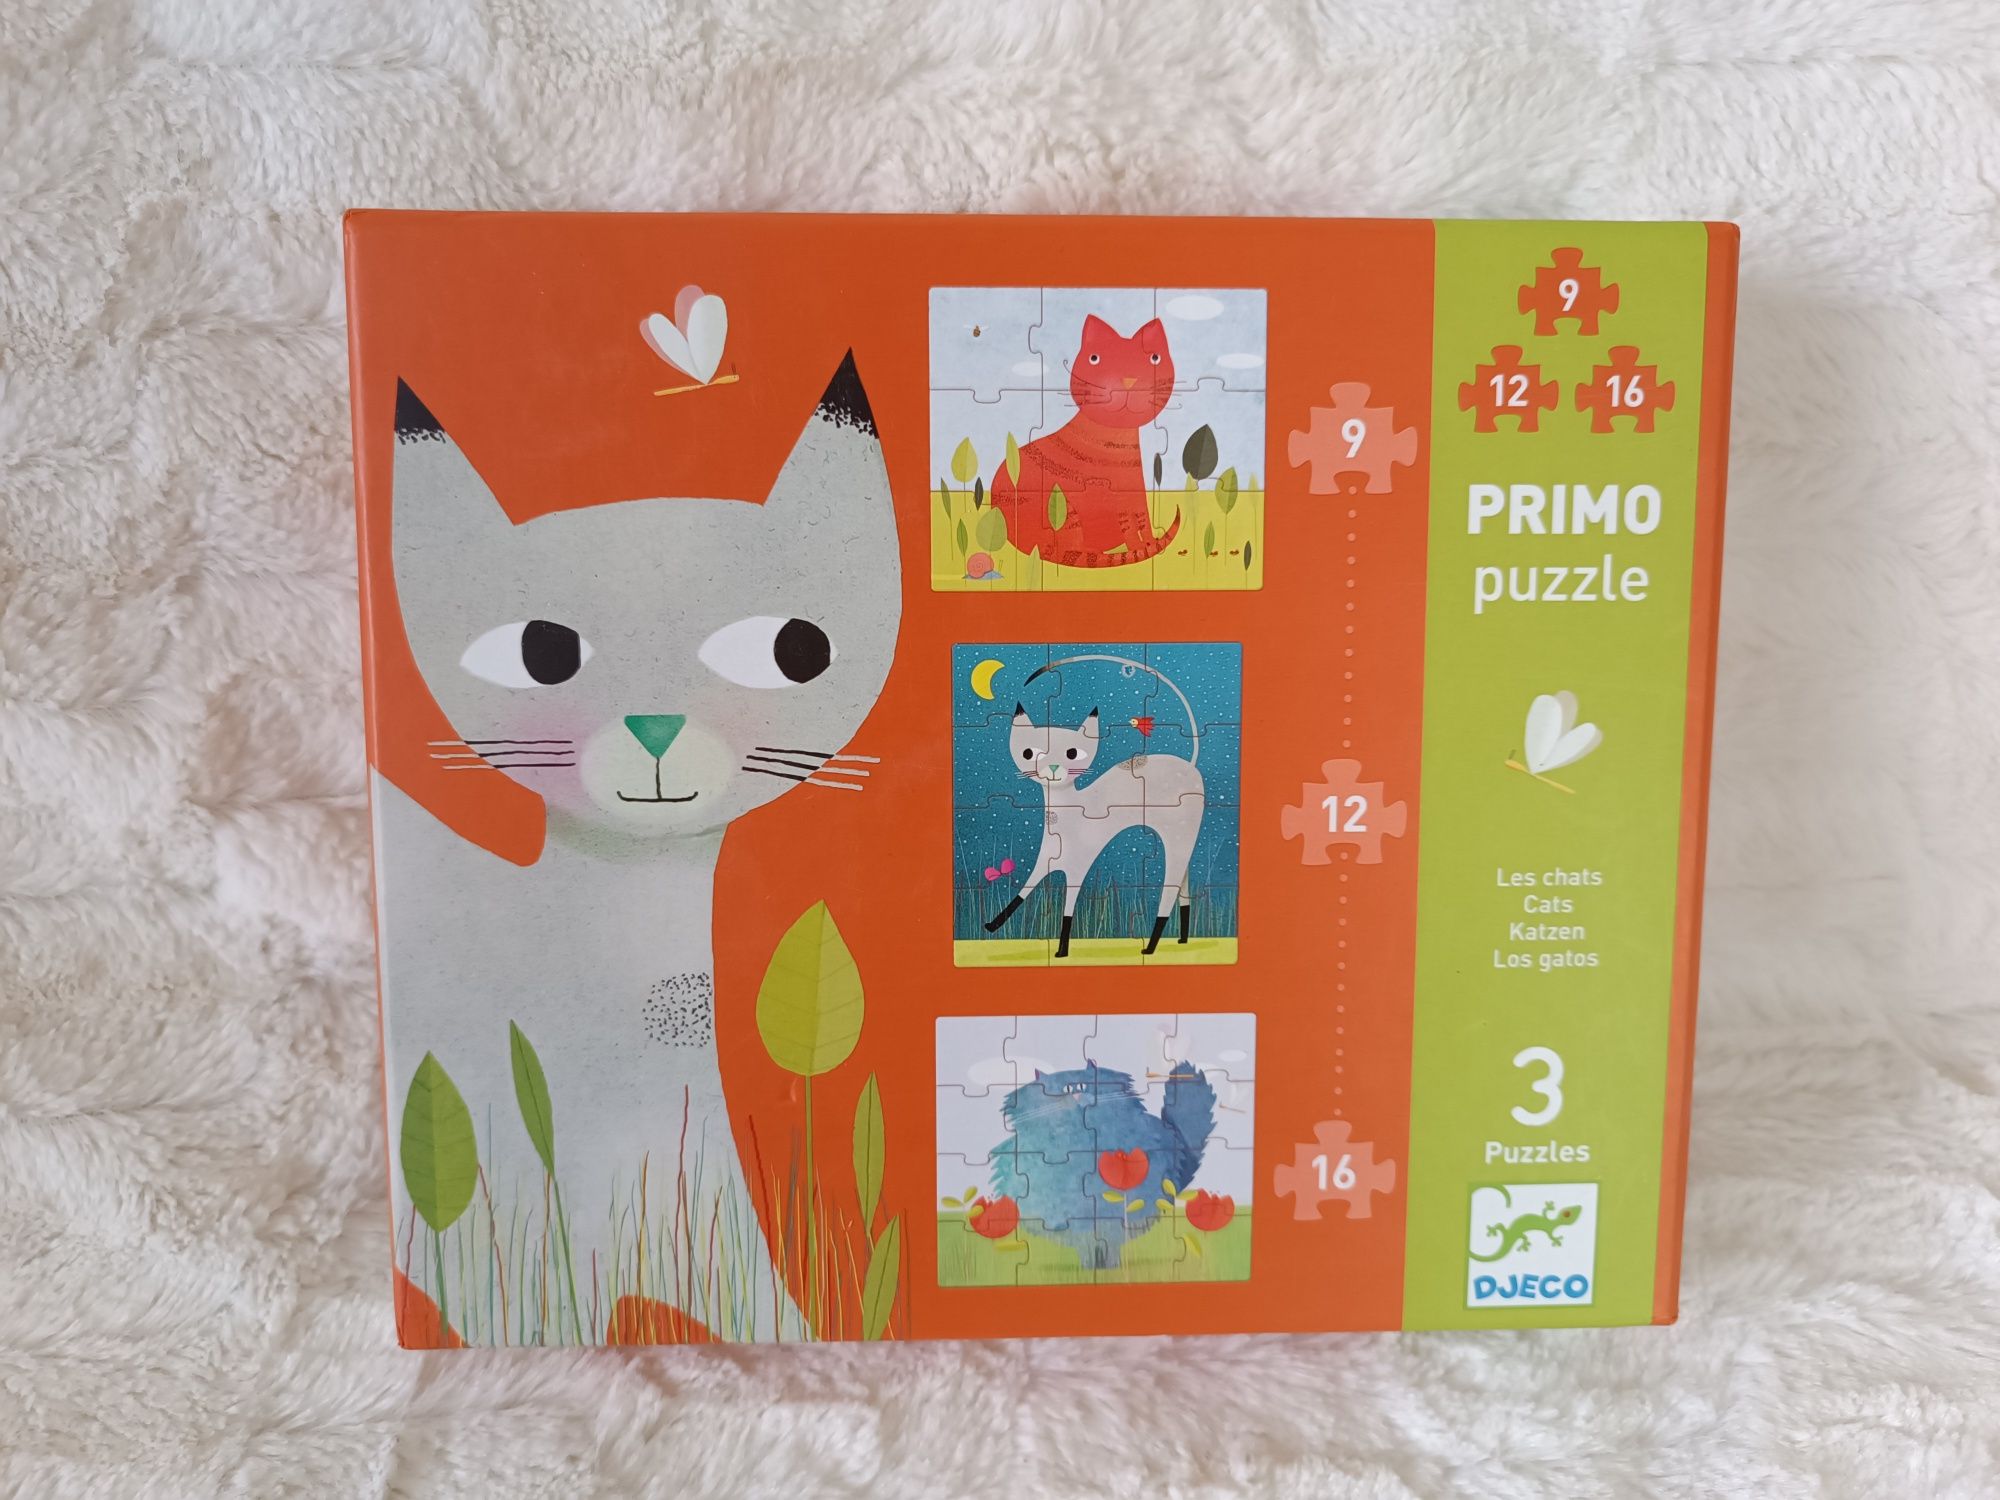 Pierwsze puzzle koty grube Djeco Primo puzzle